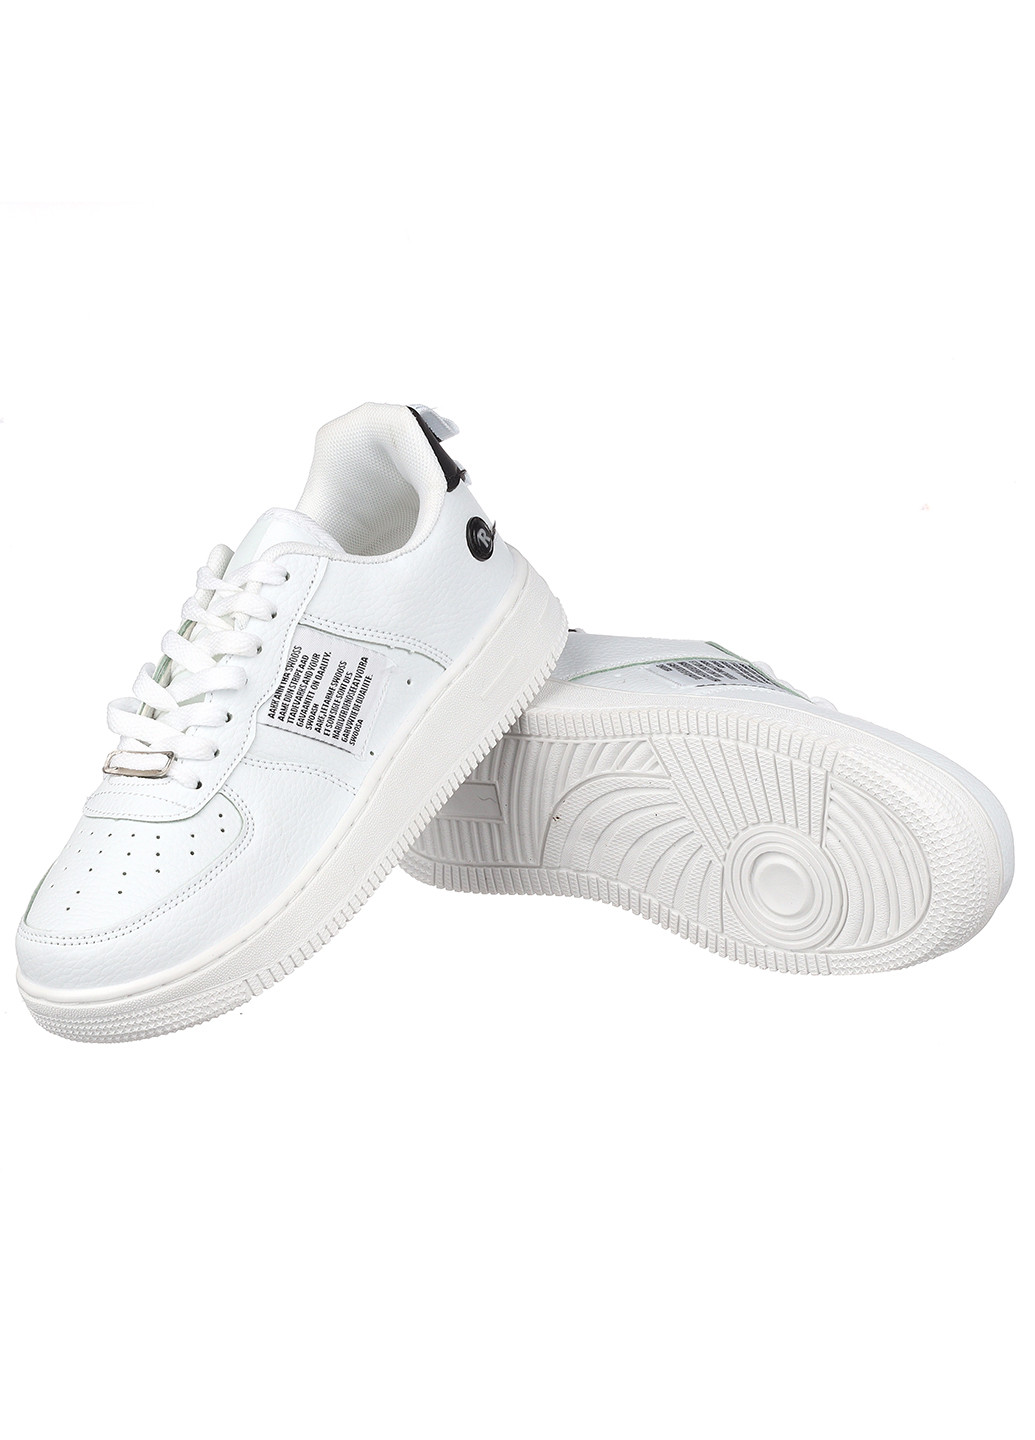 Белые демисезонные женские кроссовки b21201-1 Navigator